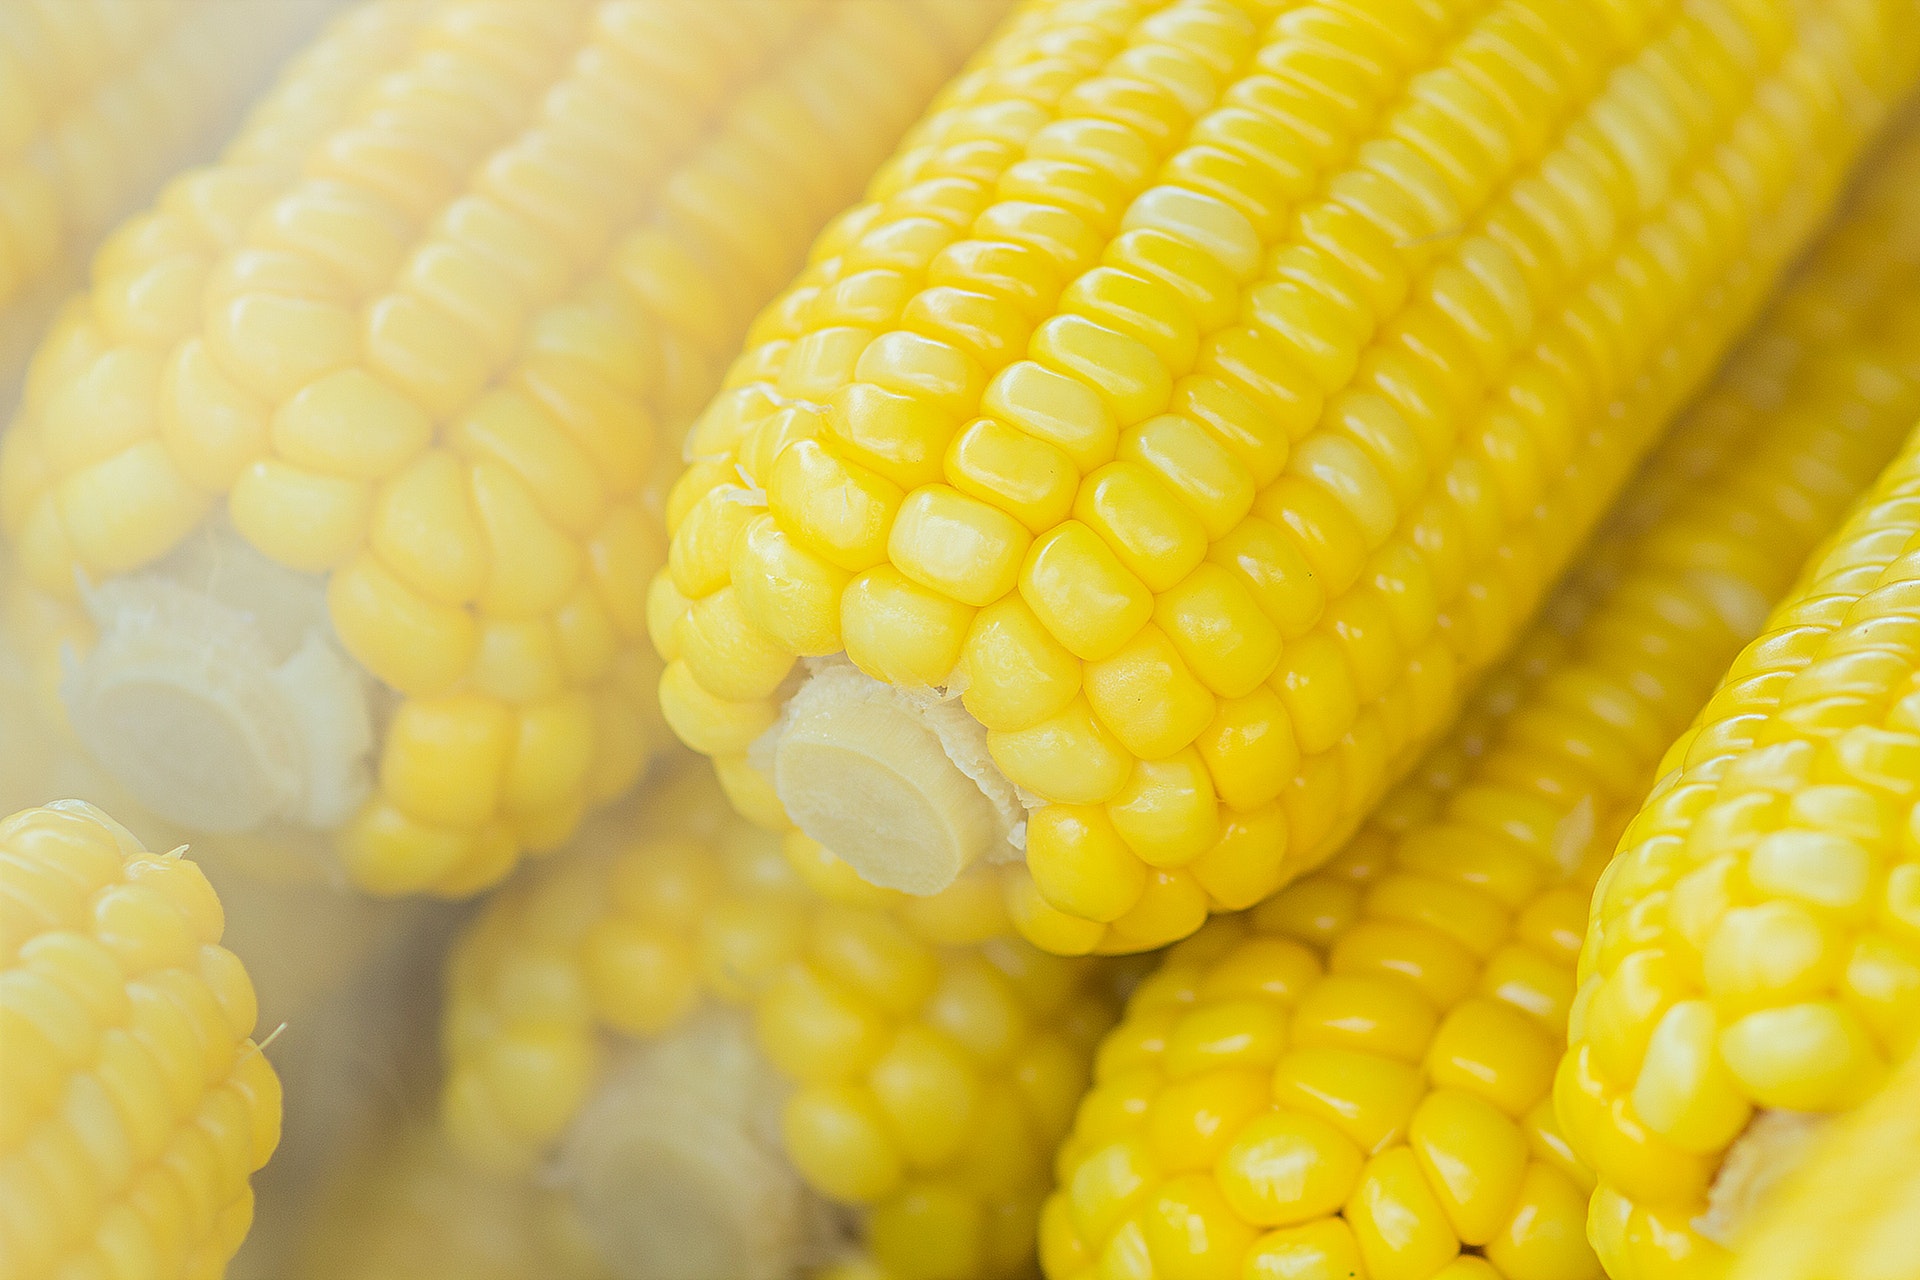 Image of ears of corn